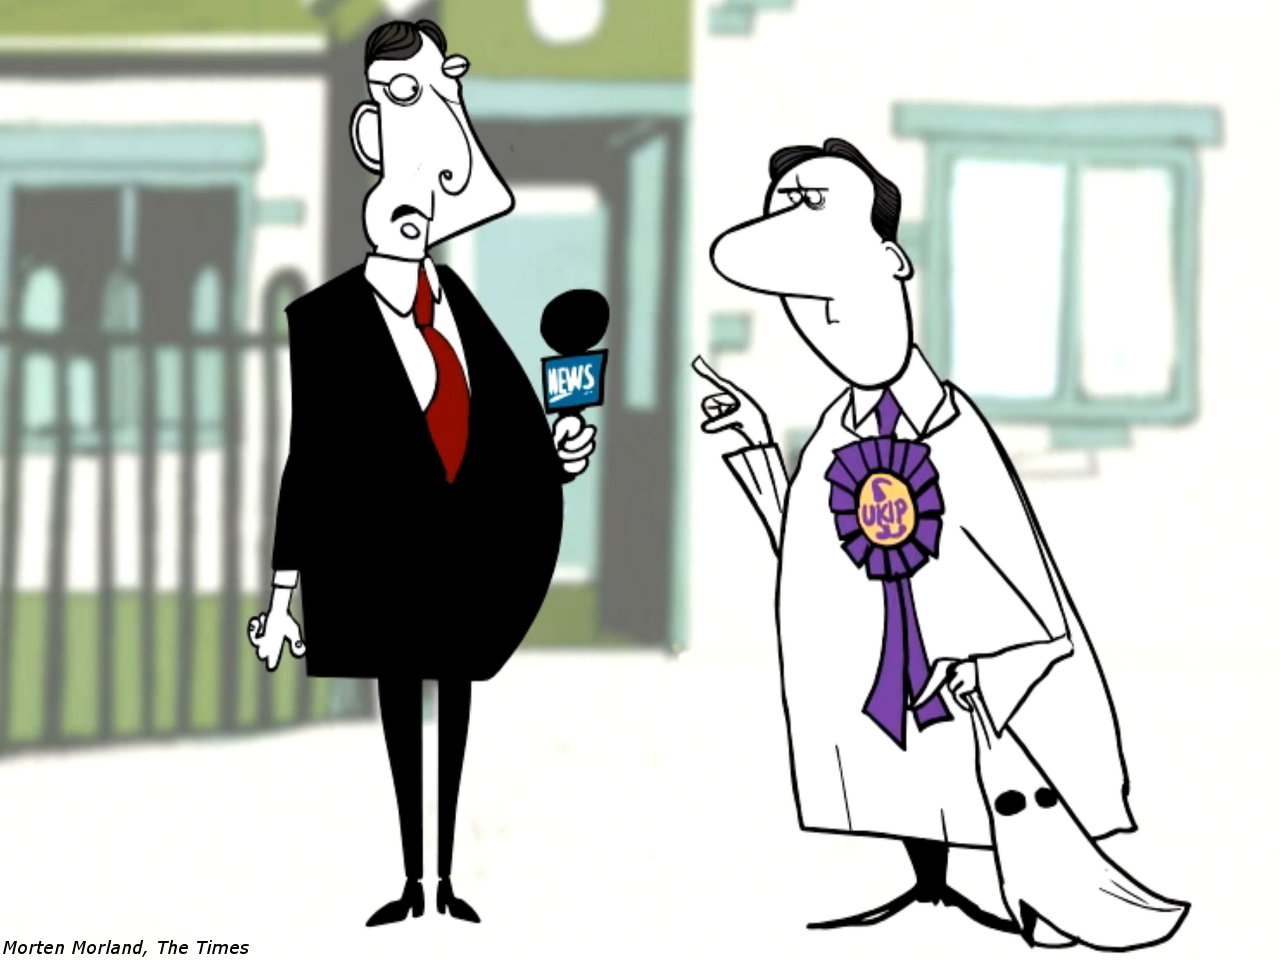 Times Newspaper Video Mocks UKIP Voters as KKK Members